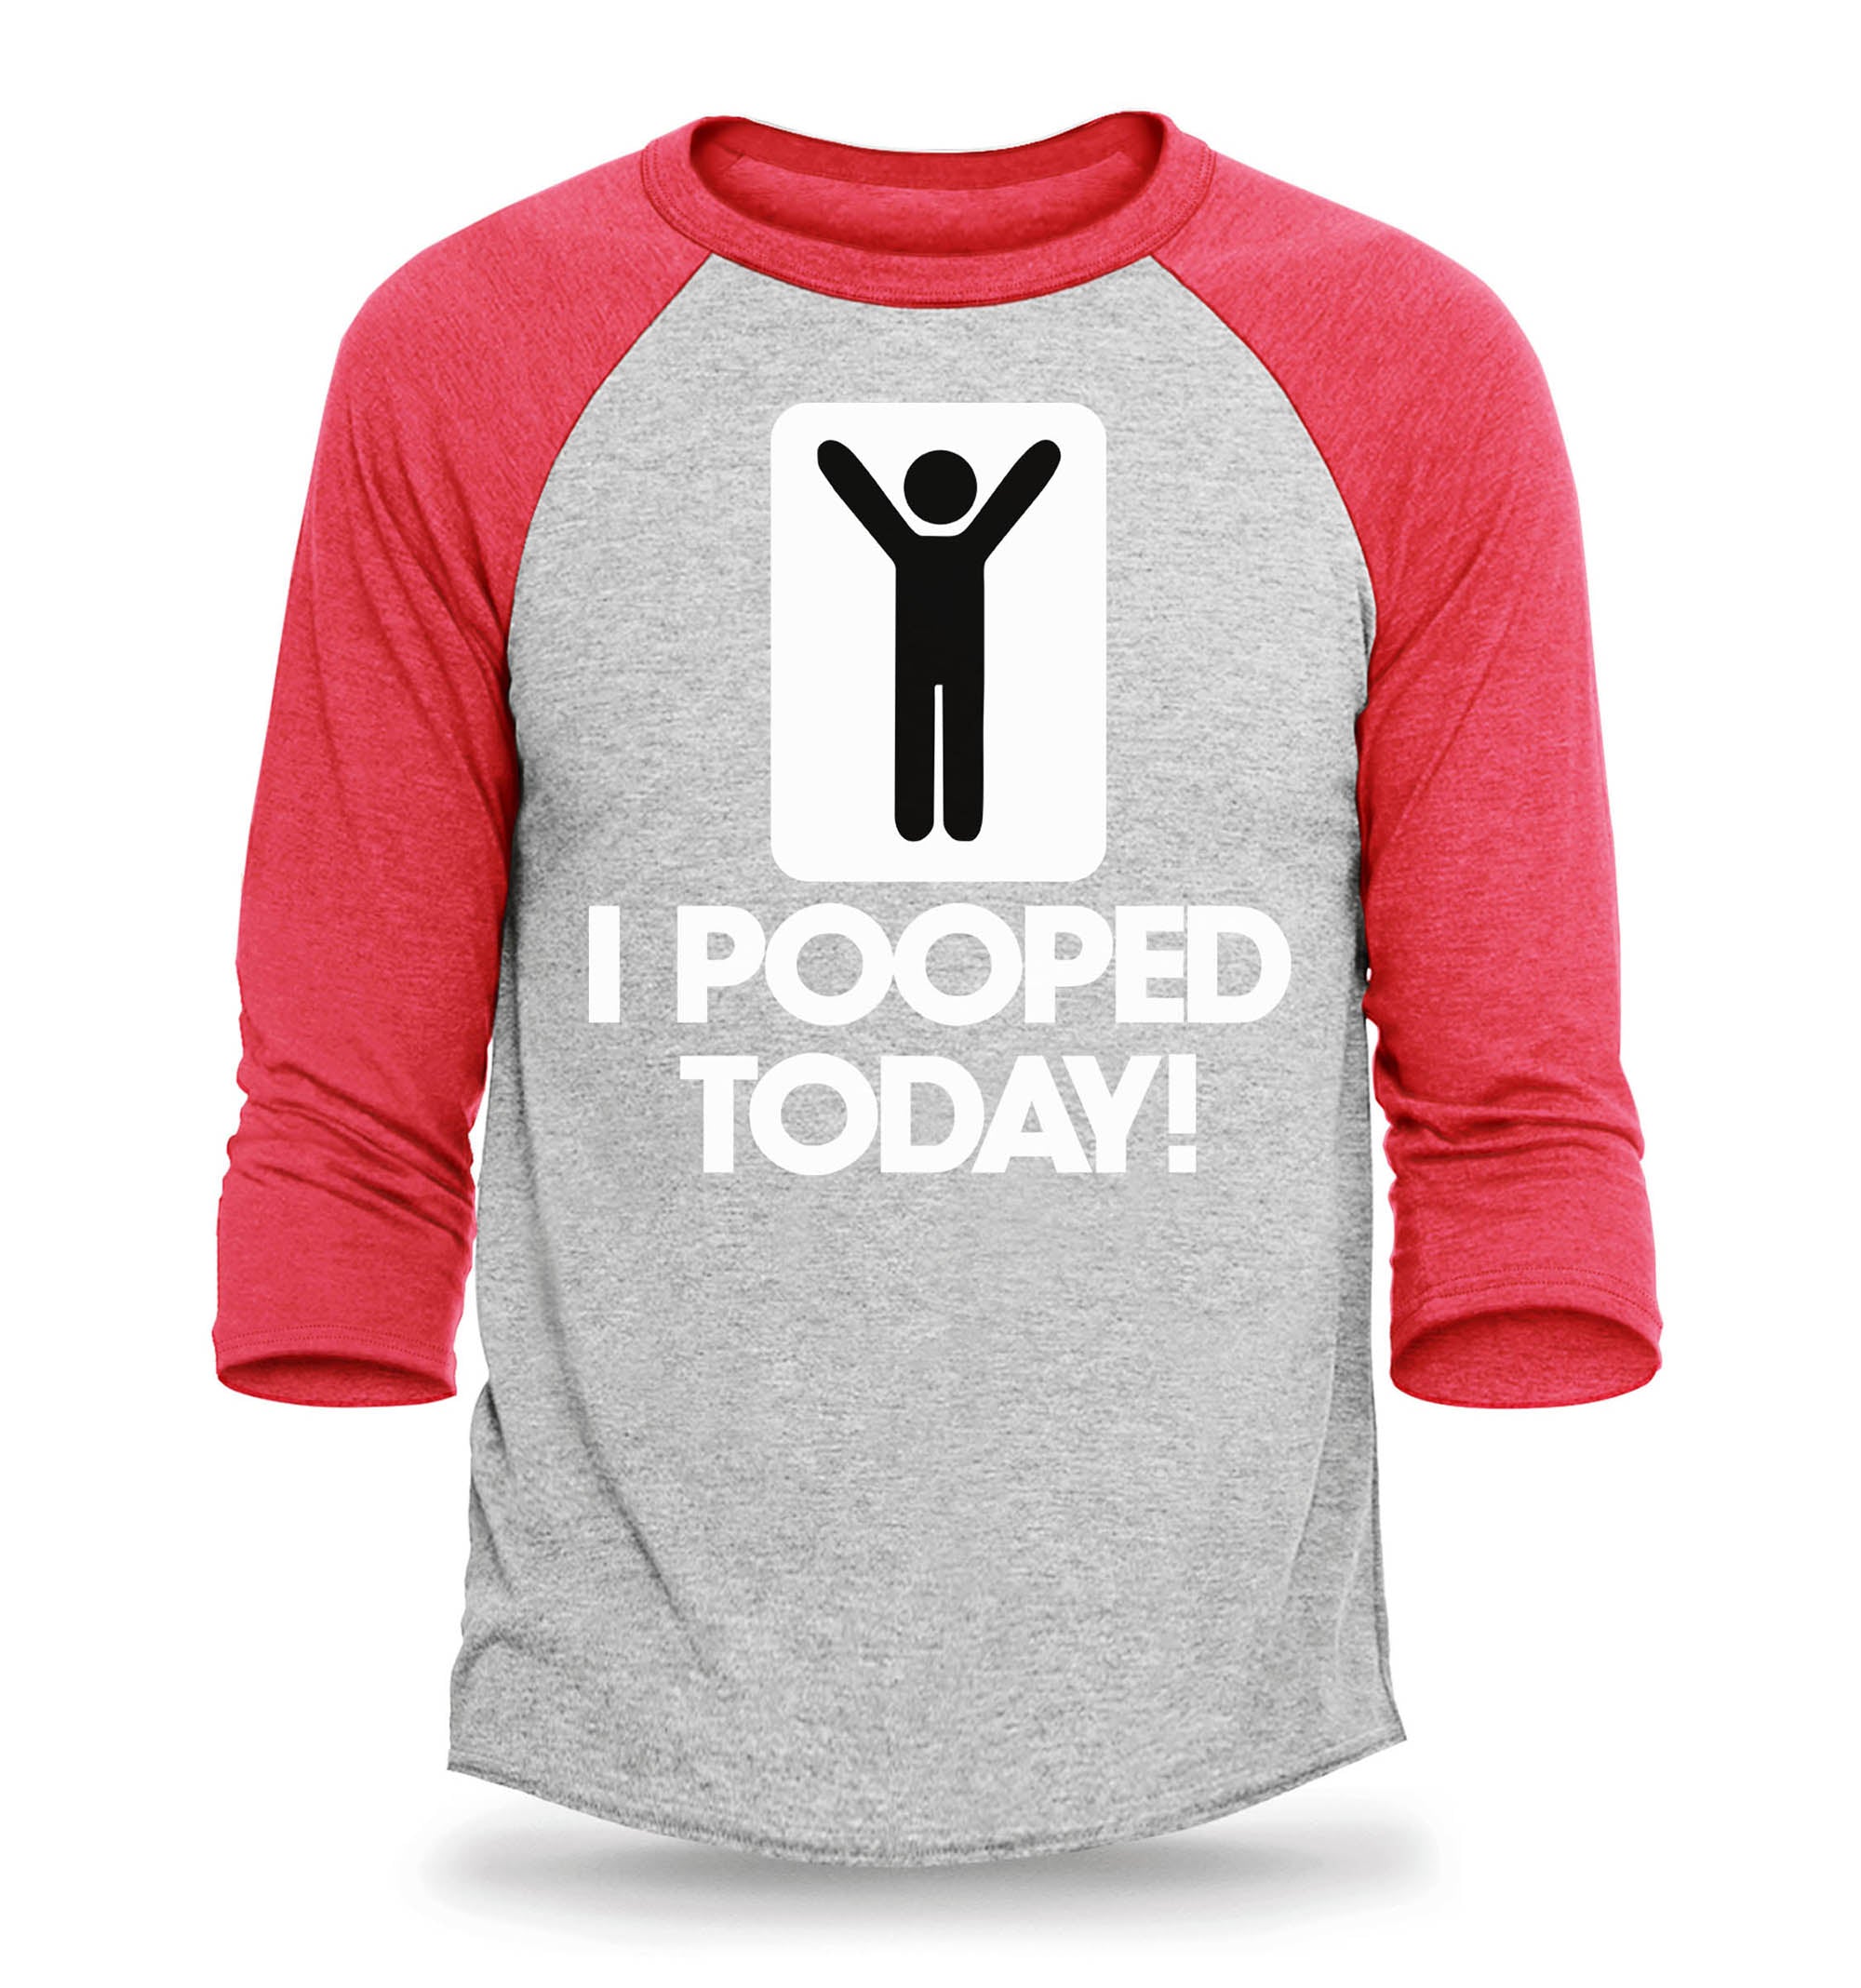 I Pooped Today Funny Raglan Baseball Shirt